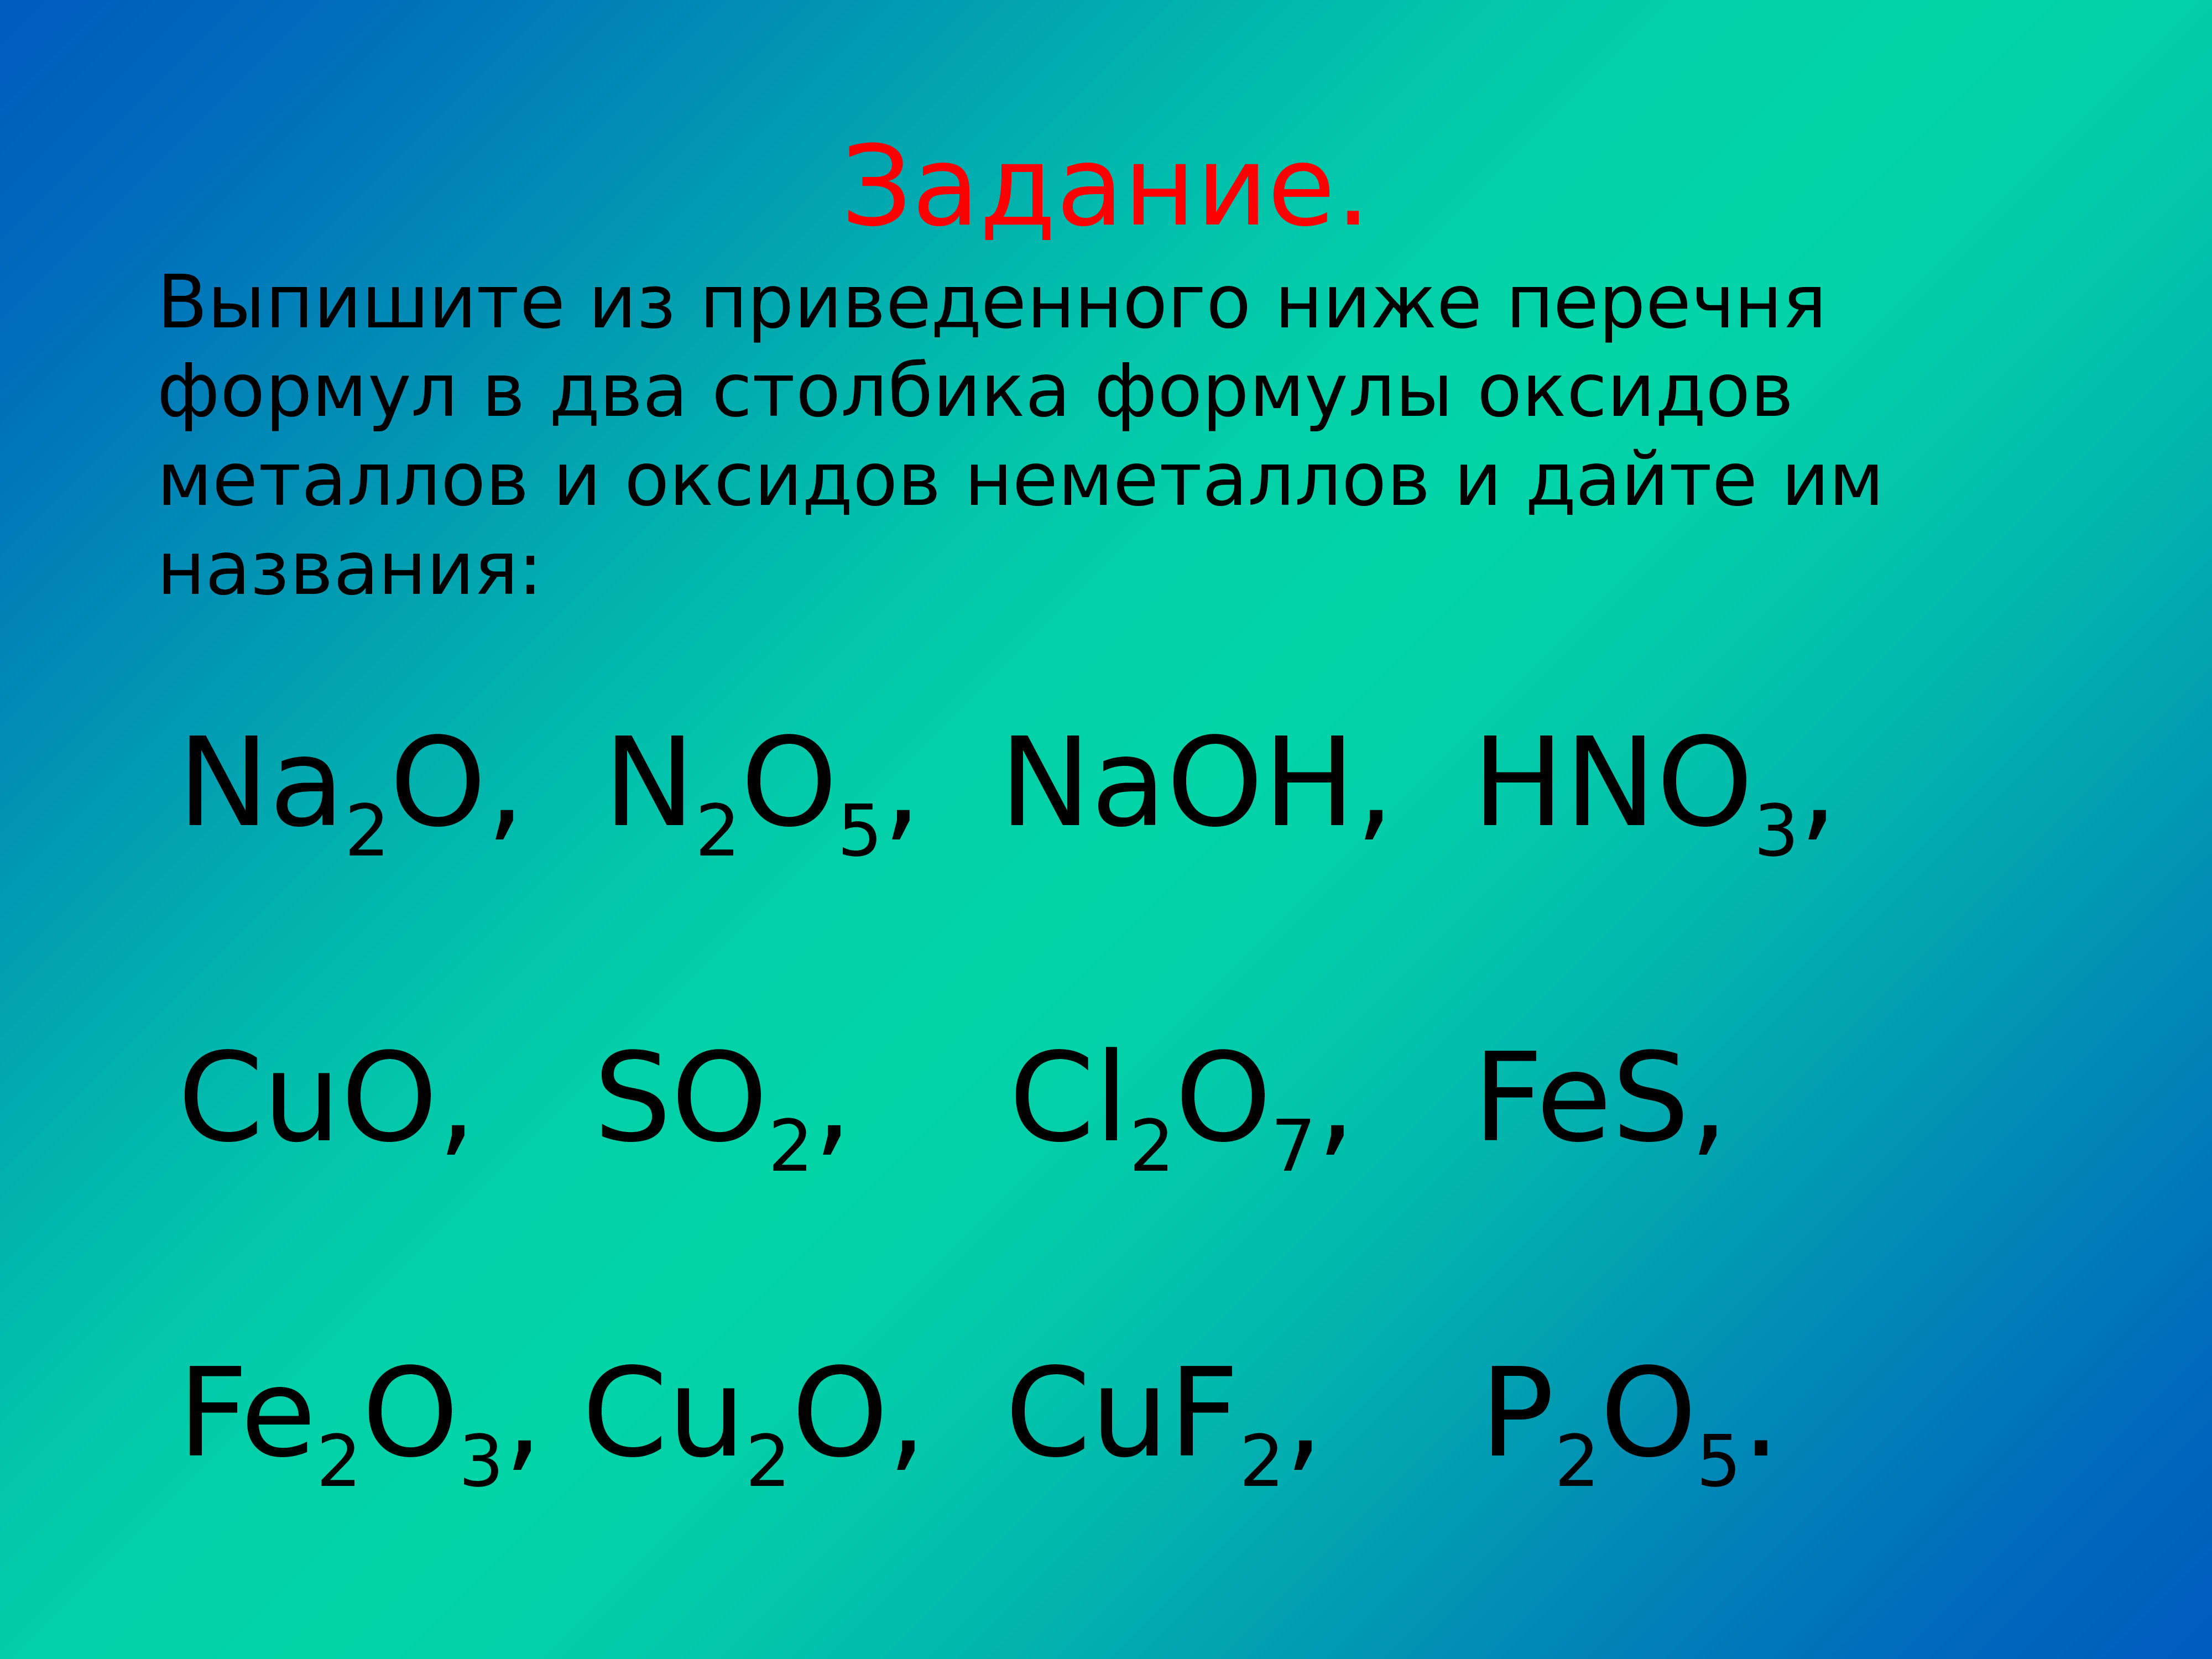 Выпишите основные оксиды и дайте им названия. Формулы соединения 10 оксидов. Оксиды формулы и названия. Формула оксида металла. Названия оксидов задания.